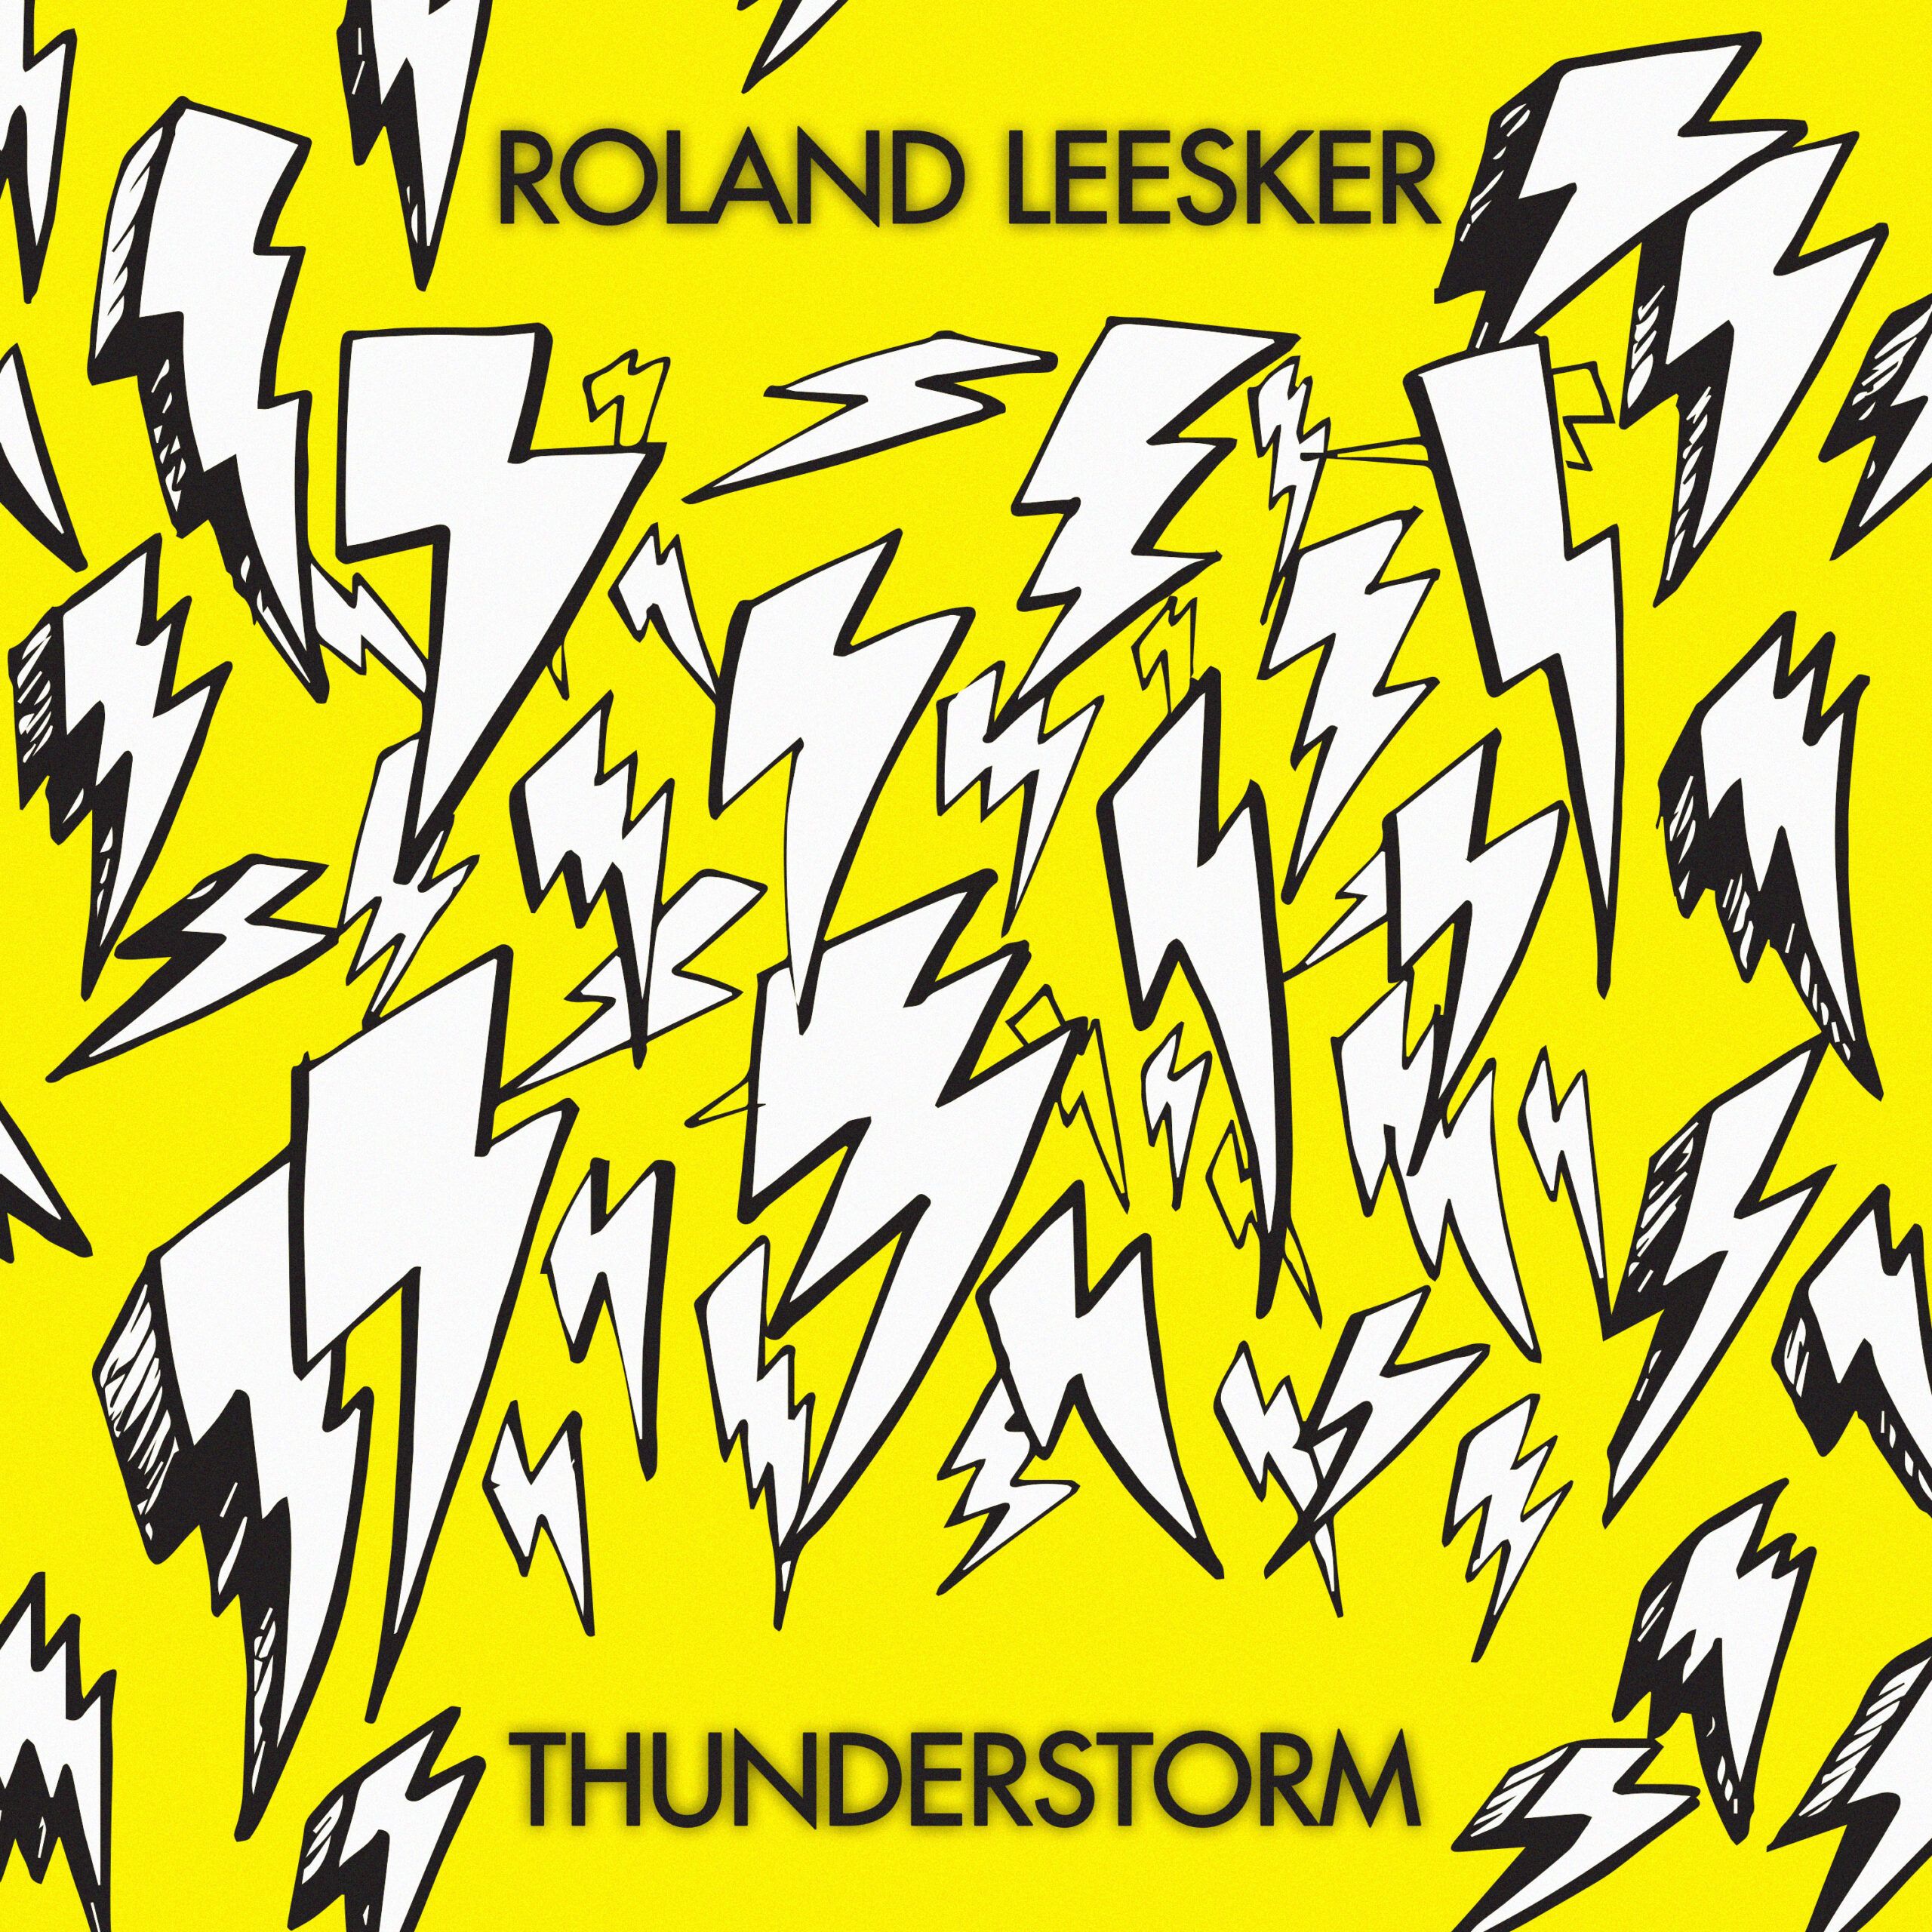 roland_leesker_thunderstorm.jpg